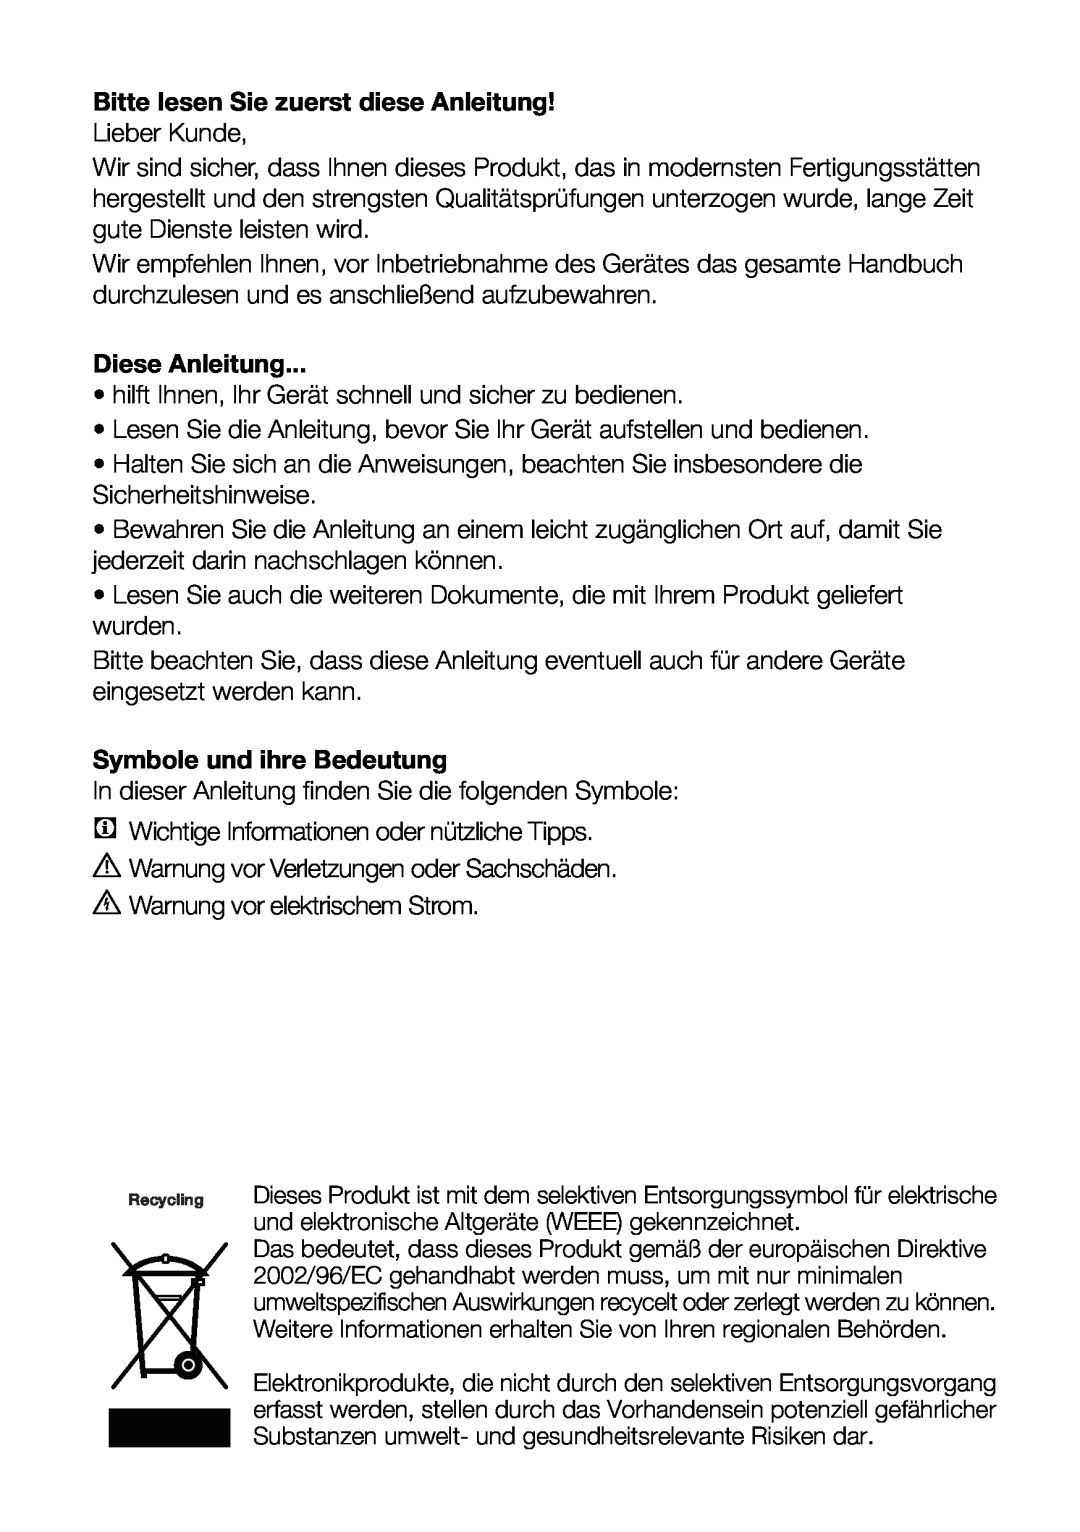 Blomberg FNT 9682 A+, FNT 9682 XA+ Bitte lesen Sie zuerst diese Anleitung, Diese Anleitung, Symbole und ihre Bedeutung 